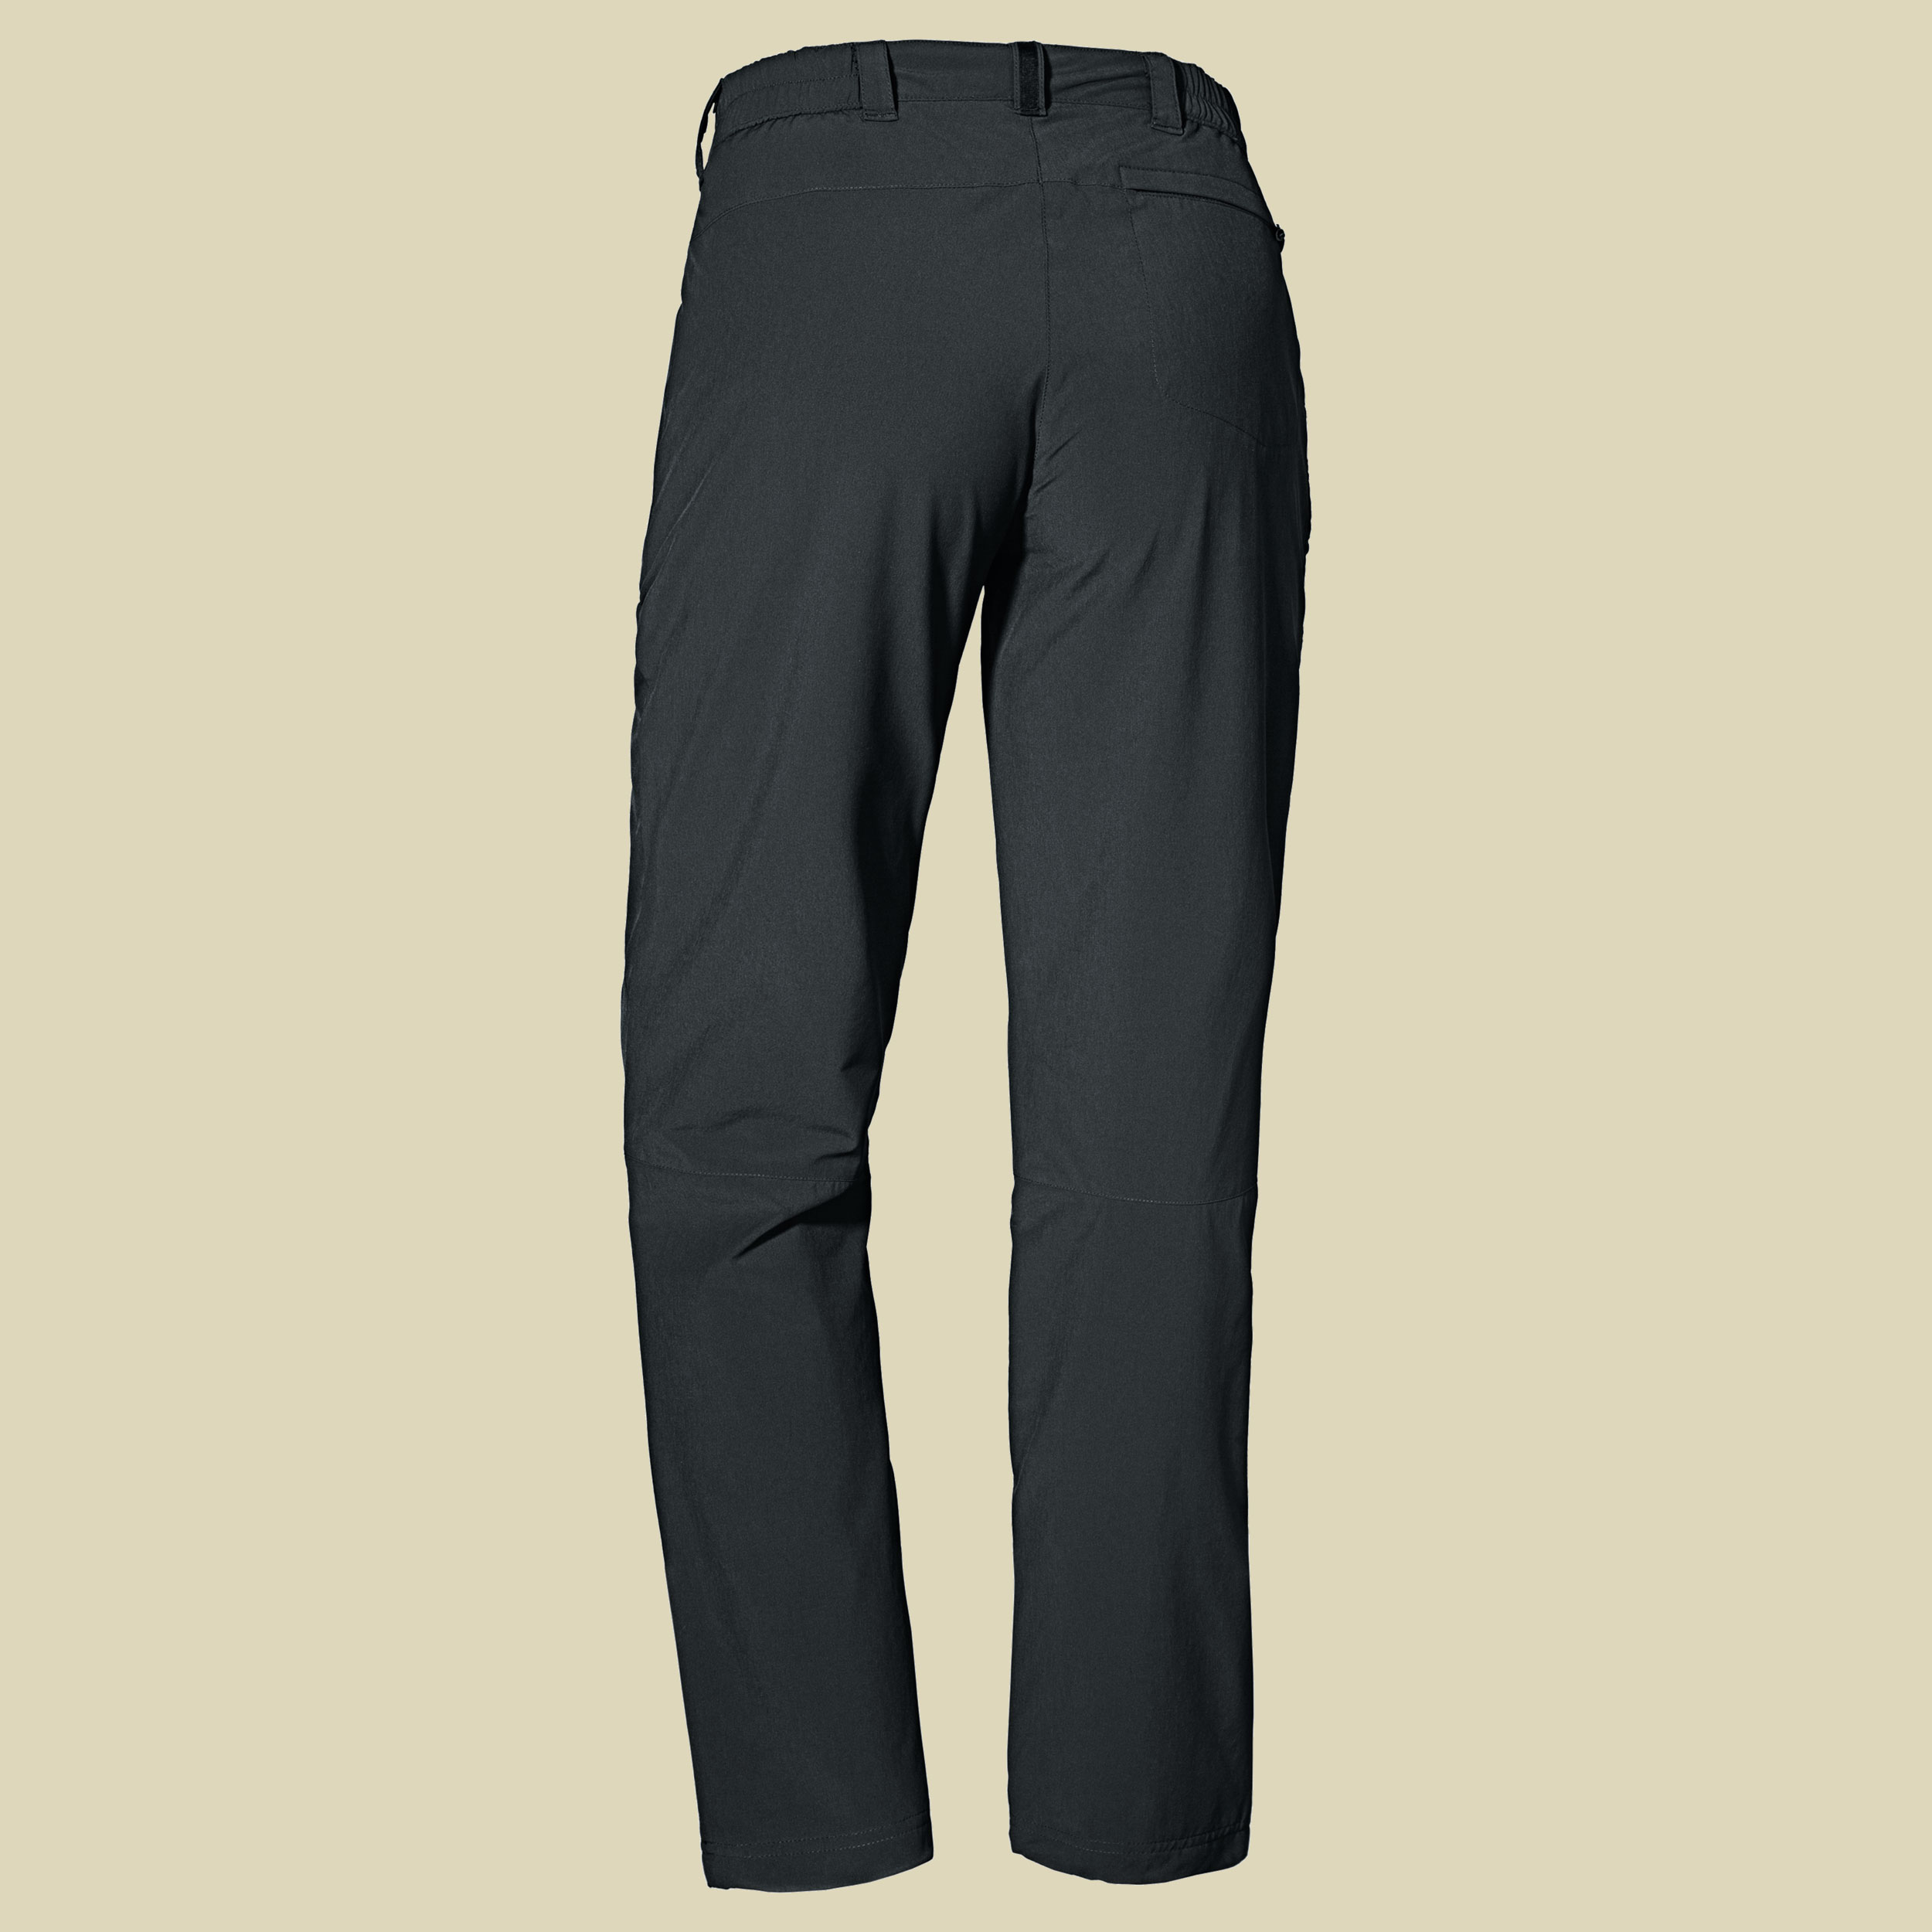 Schöffel Pants Engadin1 Warm - Walking Trousers Women's